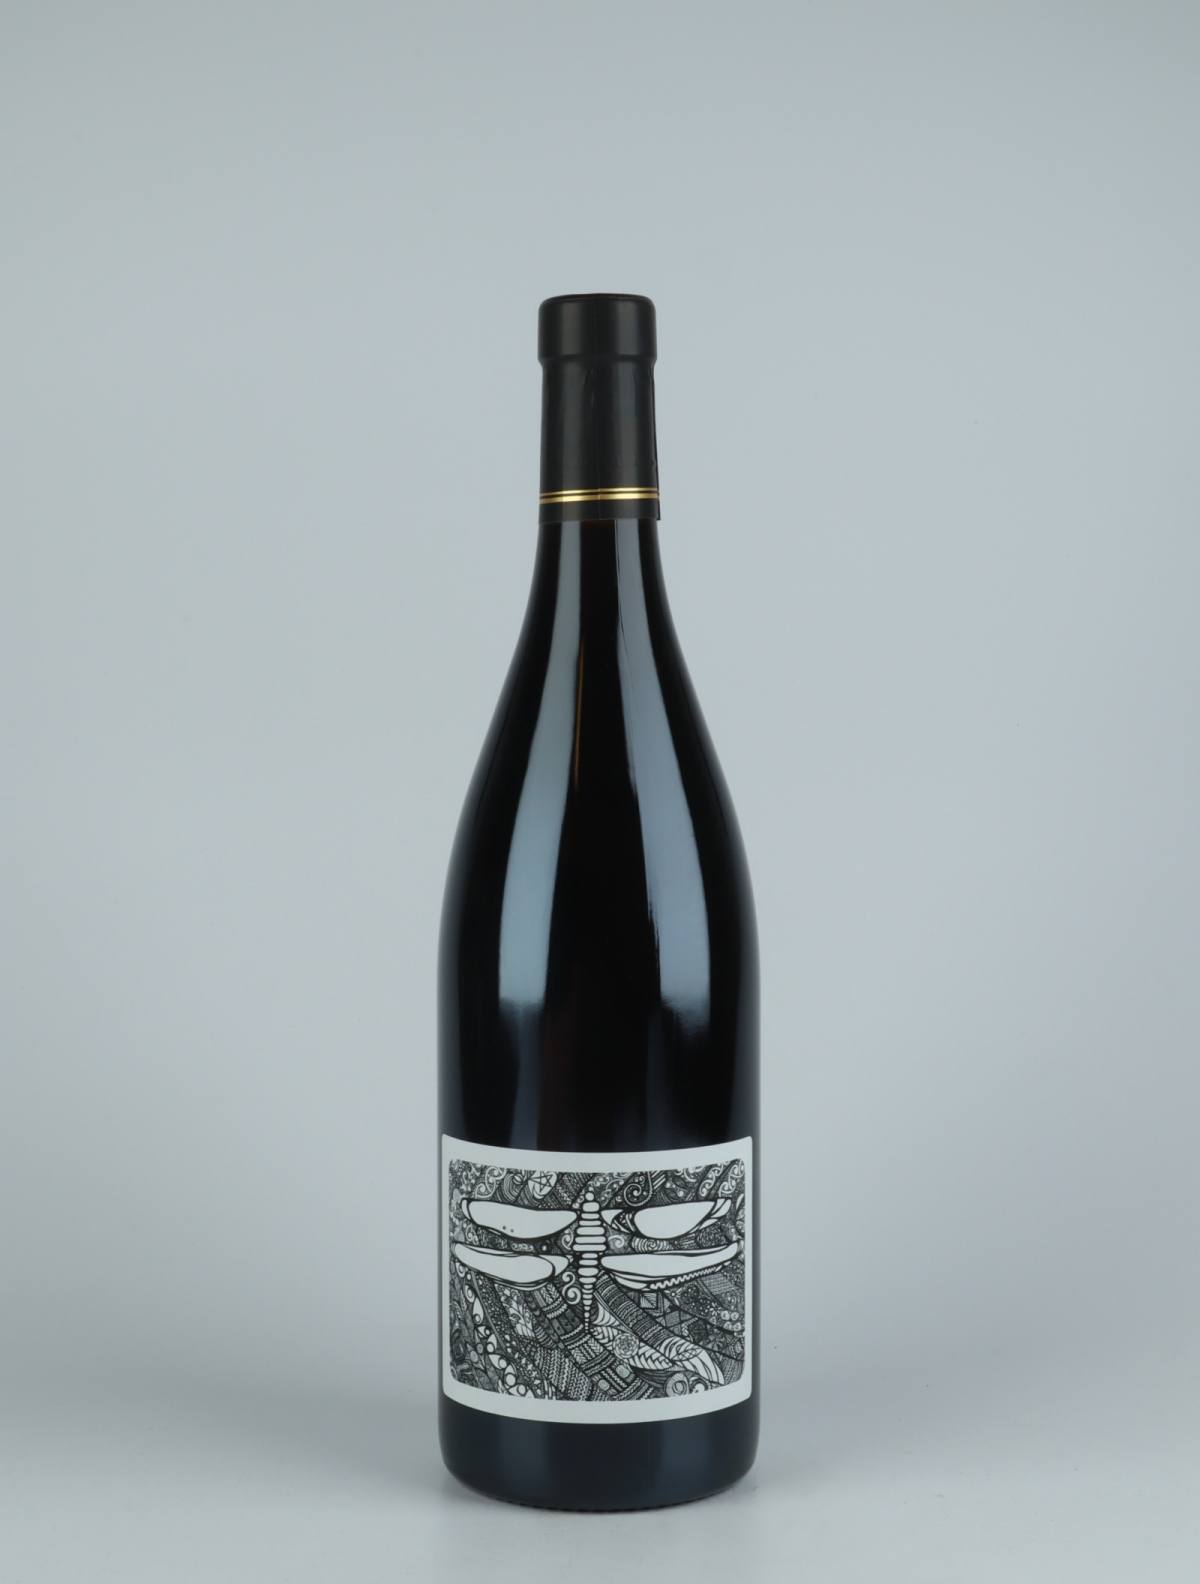 A bottle 2019 100% Red wine from Julien Courtois, Loire in France